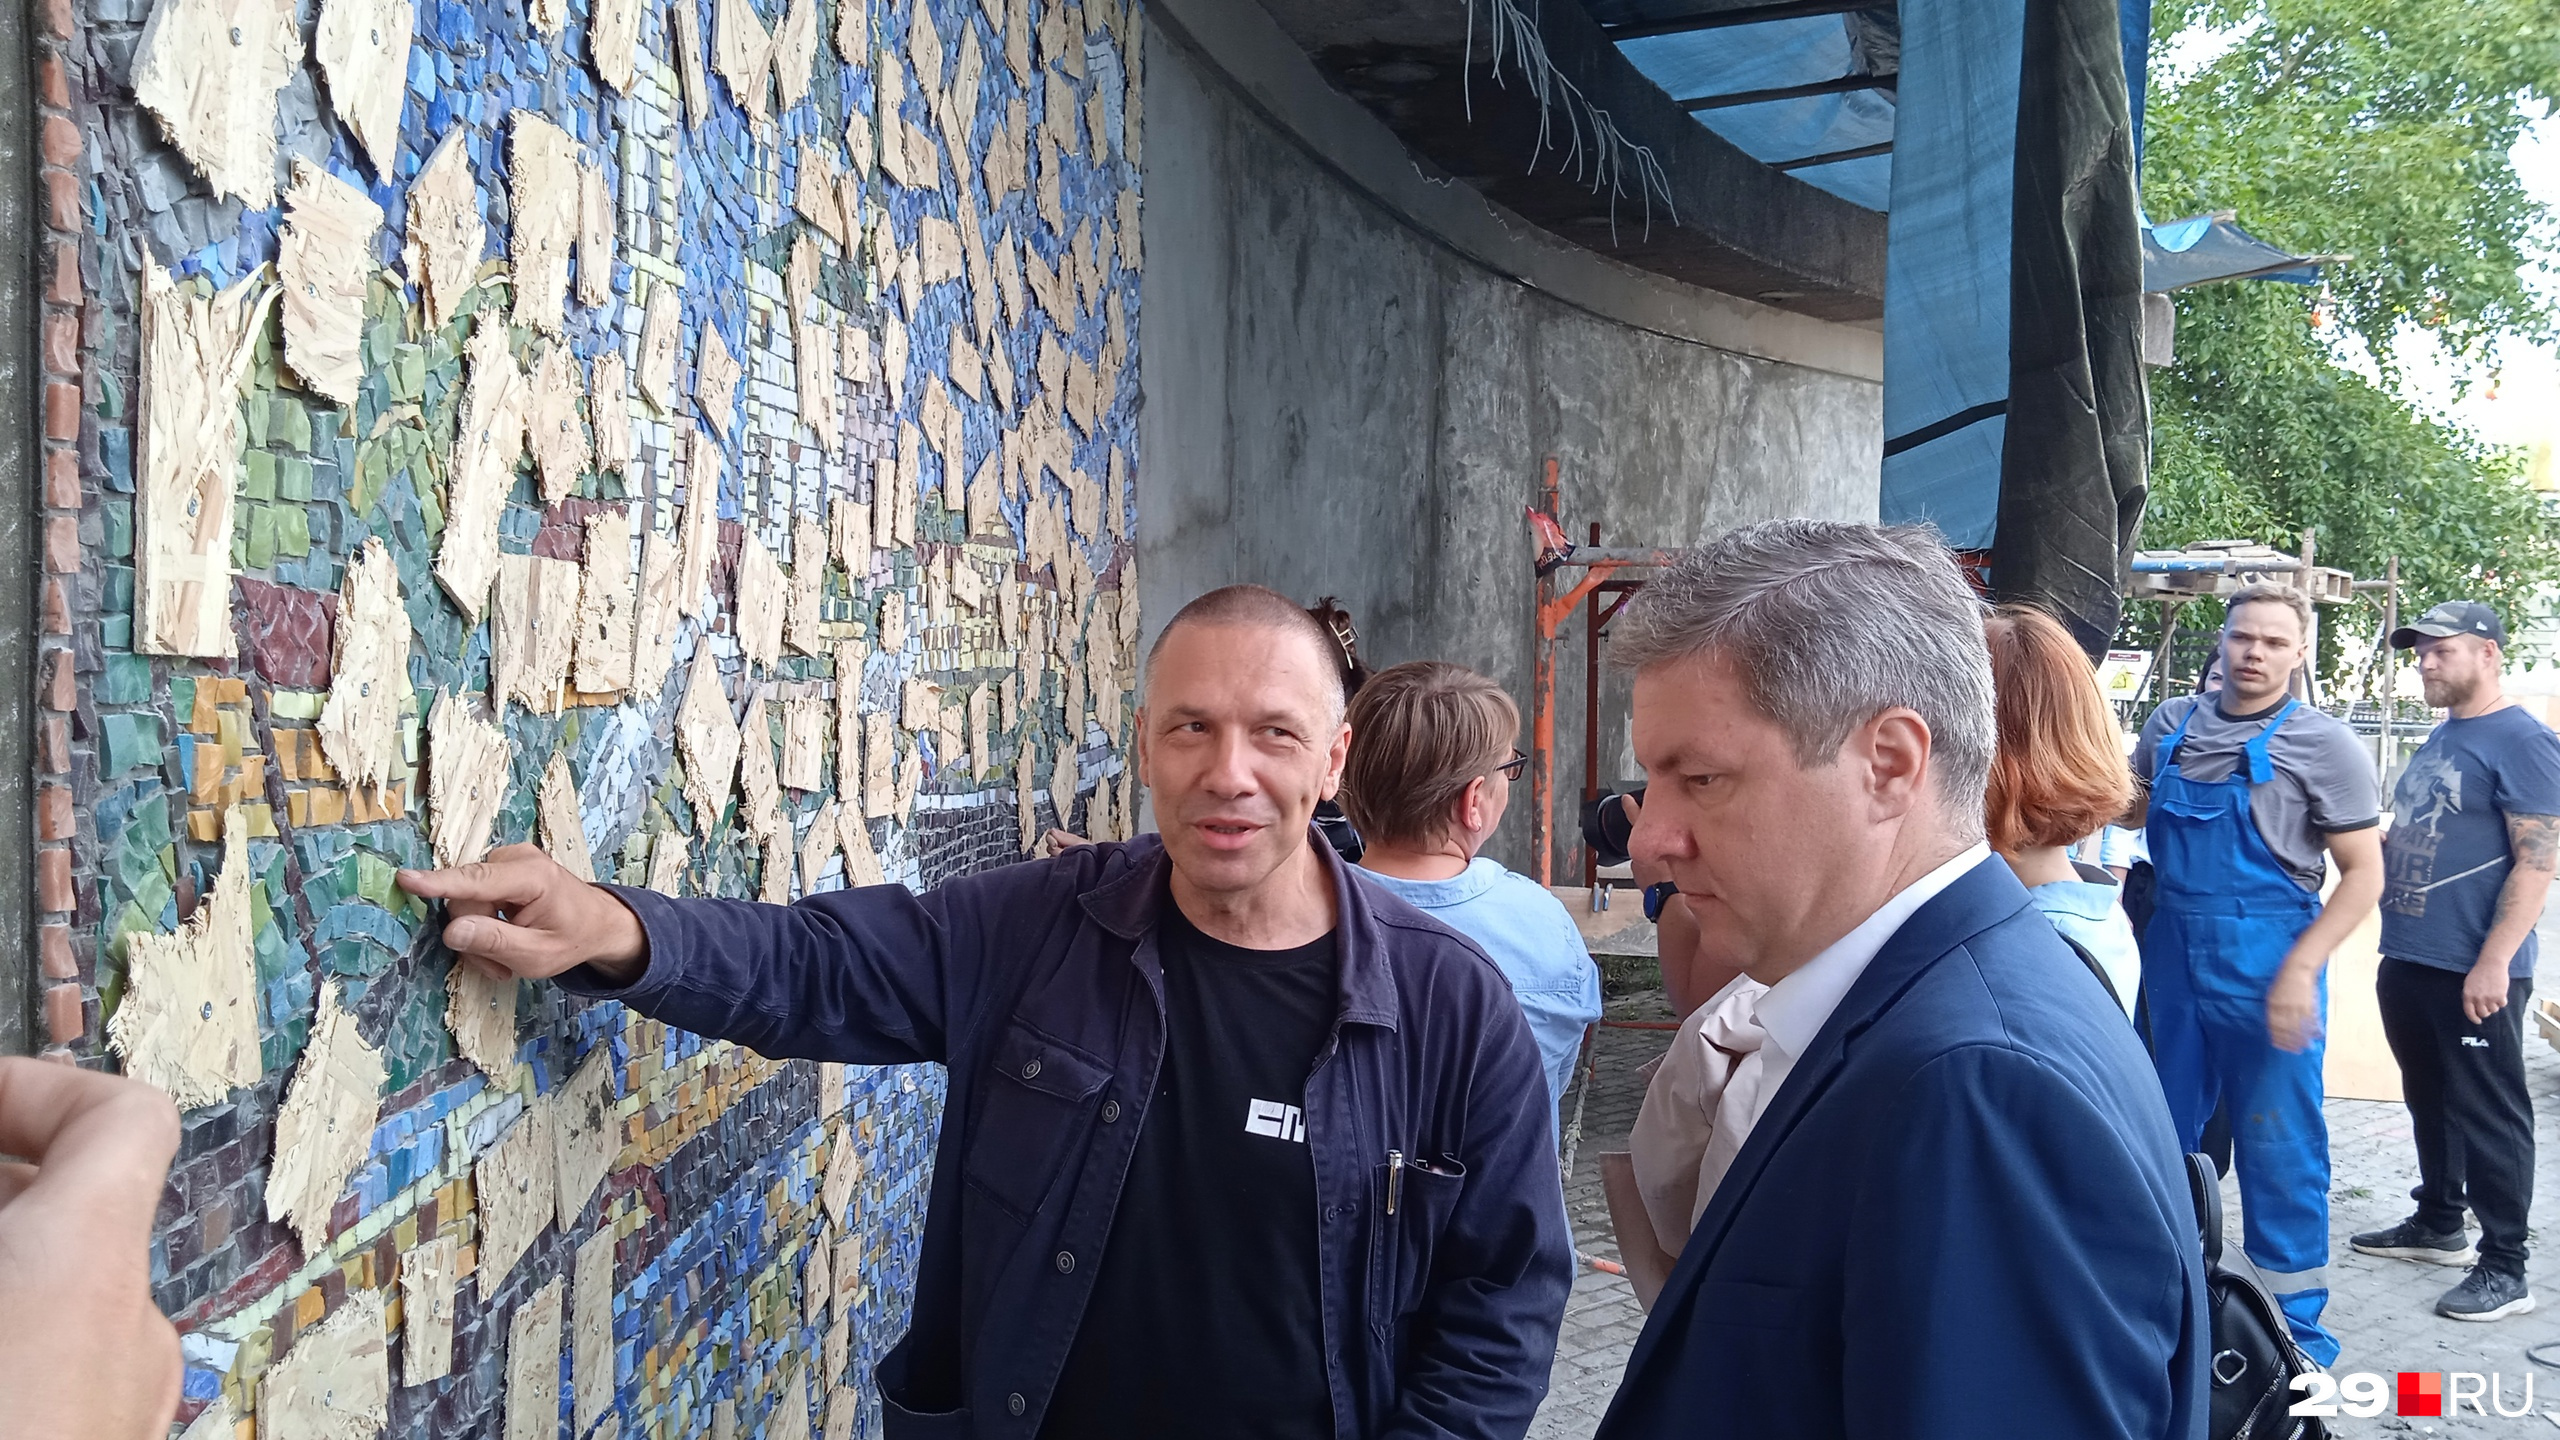 Дмитрий Морев осматривает мозаику